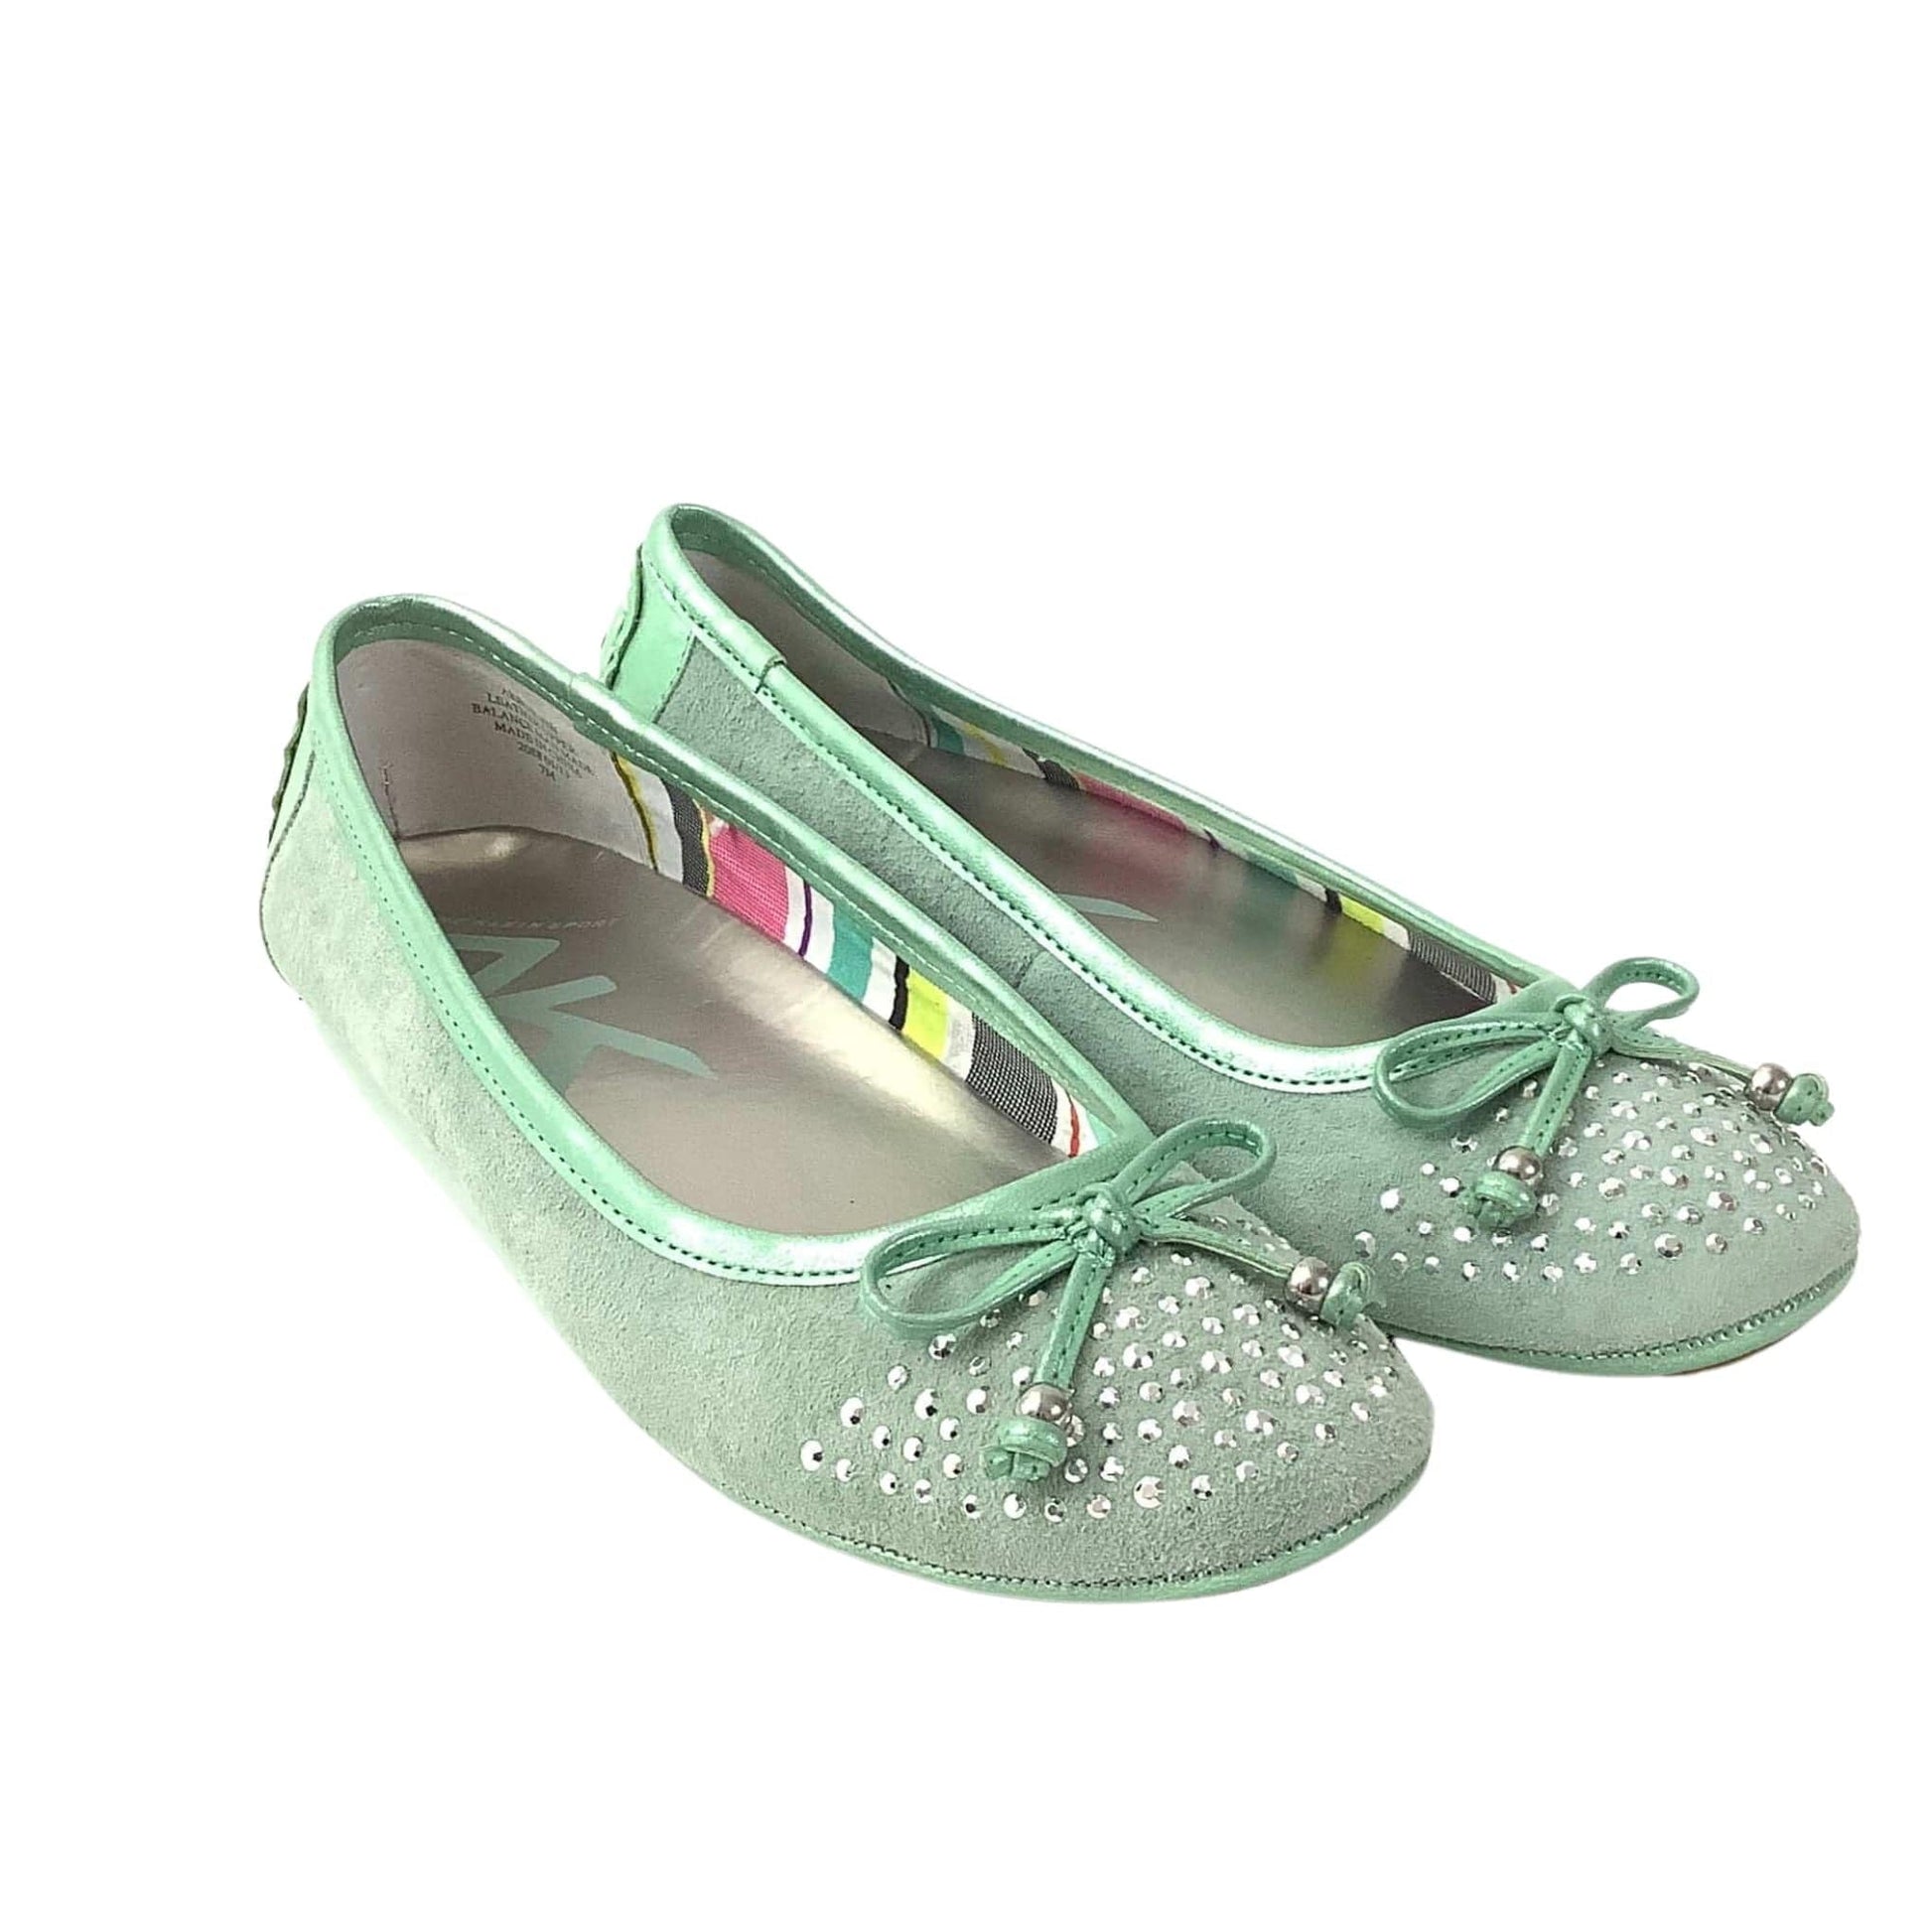 NWOT Fancy Flat Shoes 7 / Green / Classic